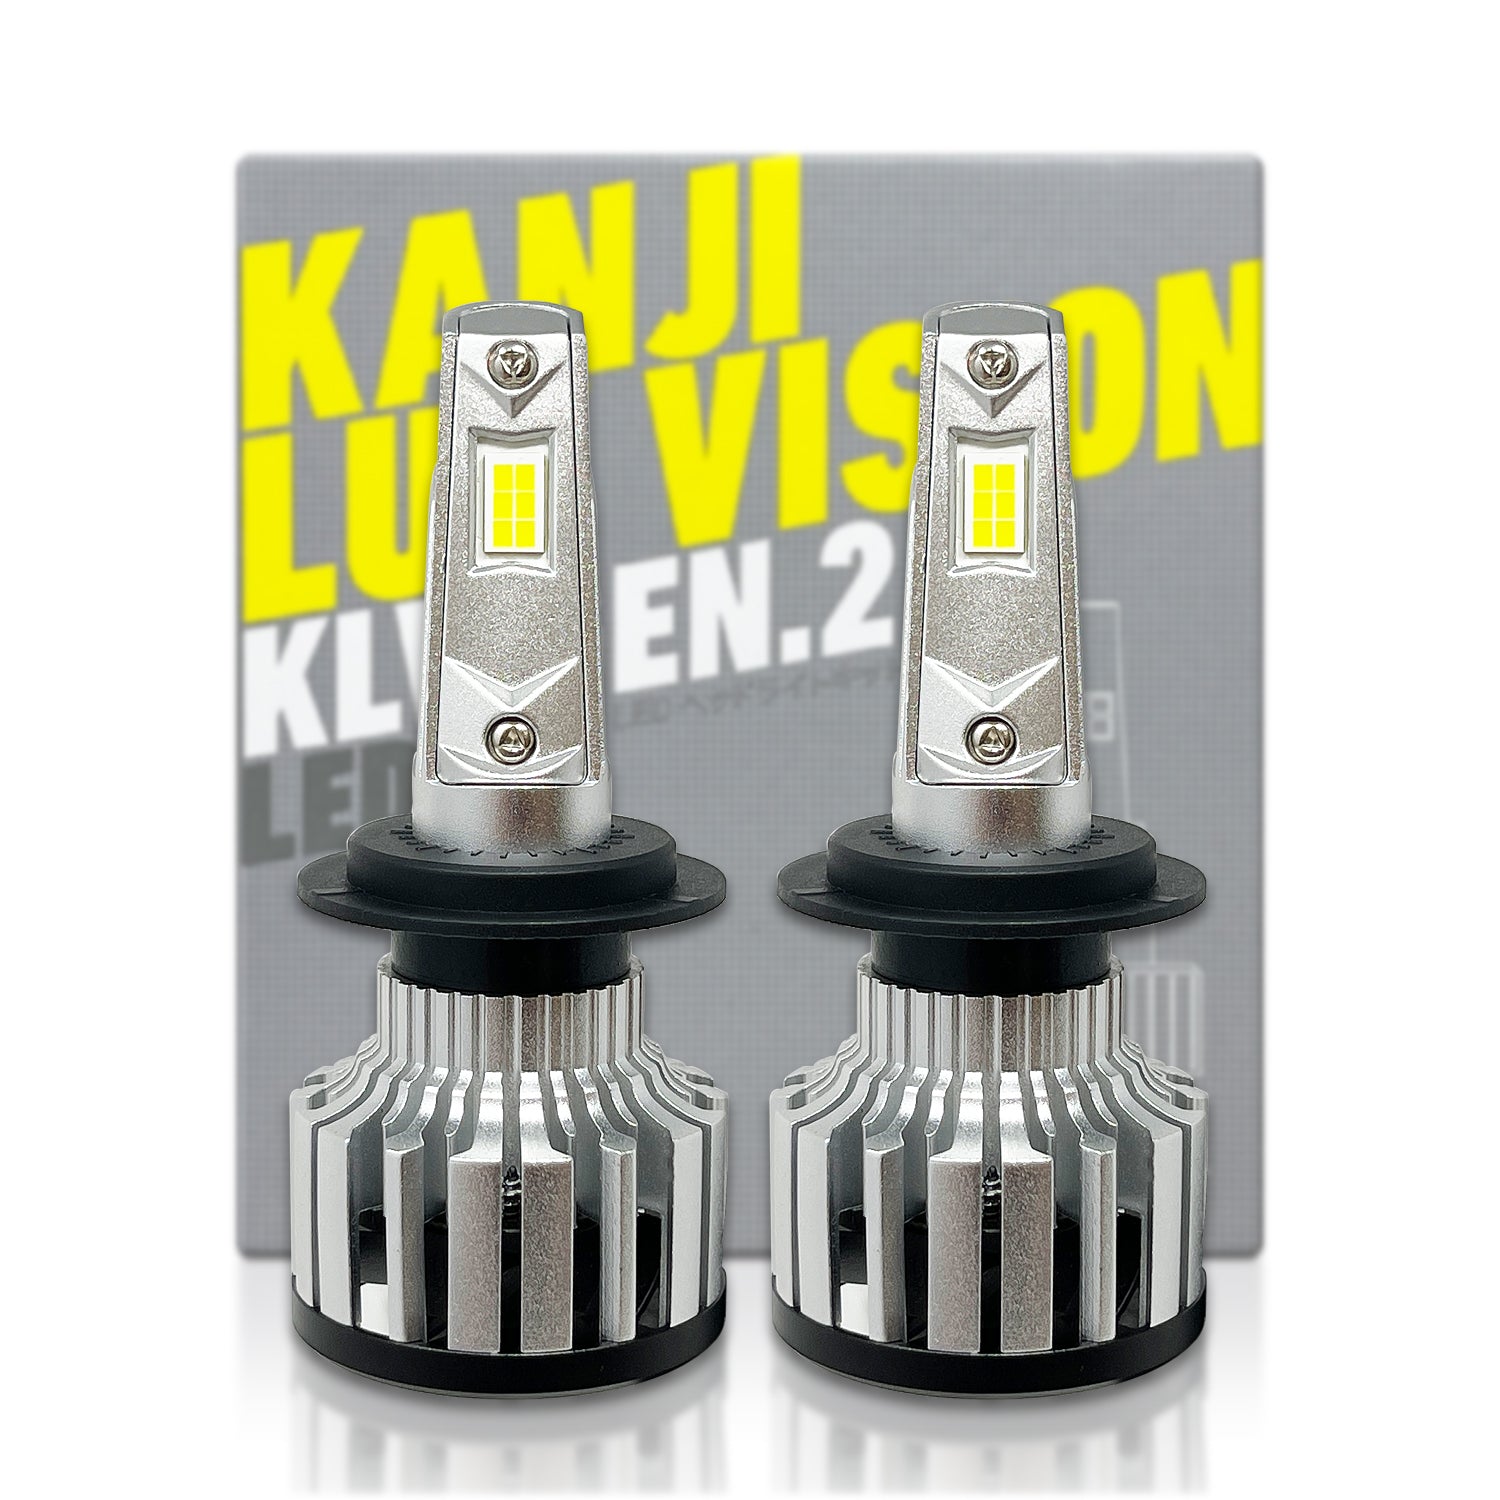 X-tremeUltinon LED car headlight bulb 12901HPX2